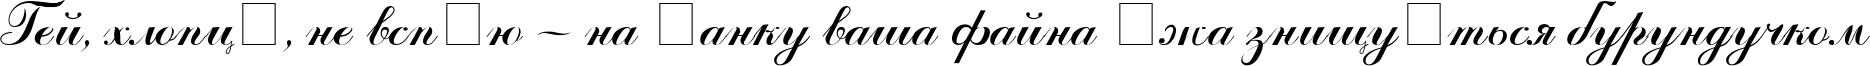 Пример написания шрифтом ArtScript текста на украинском